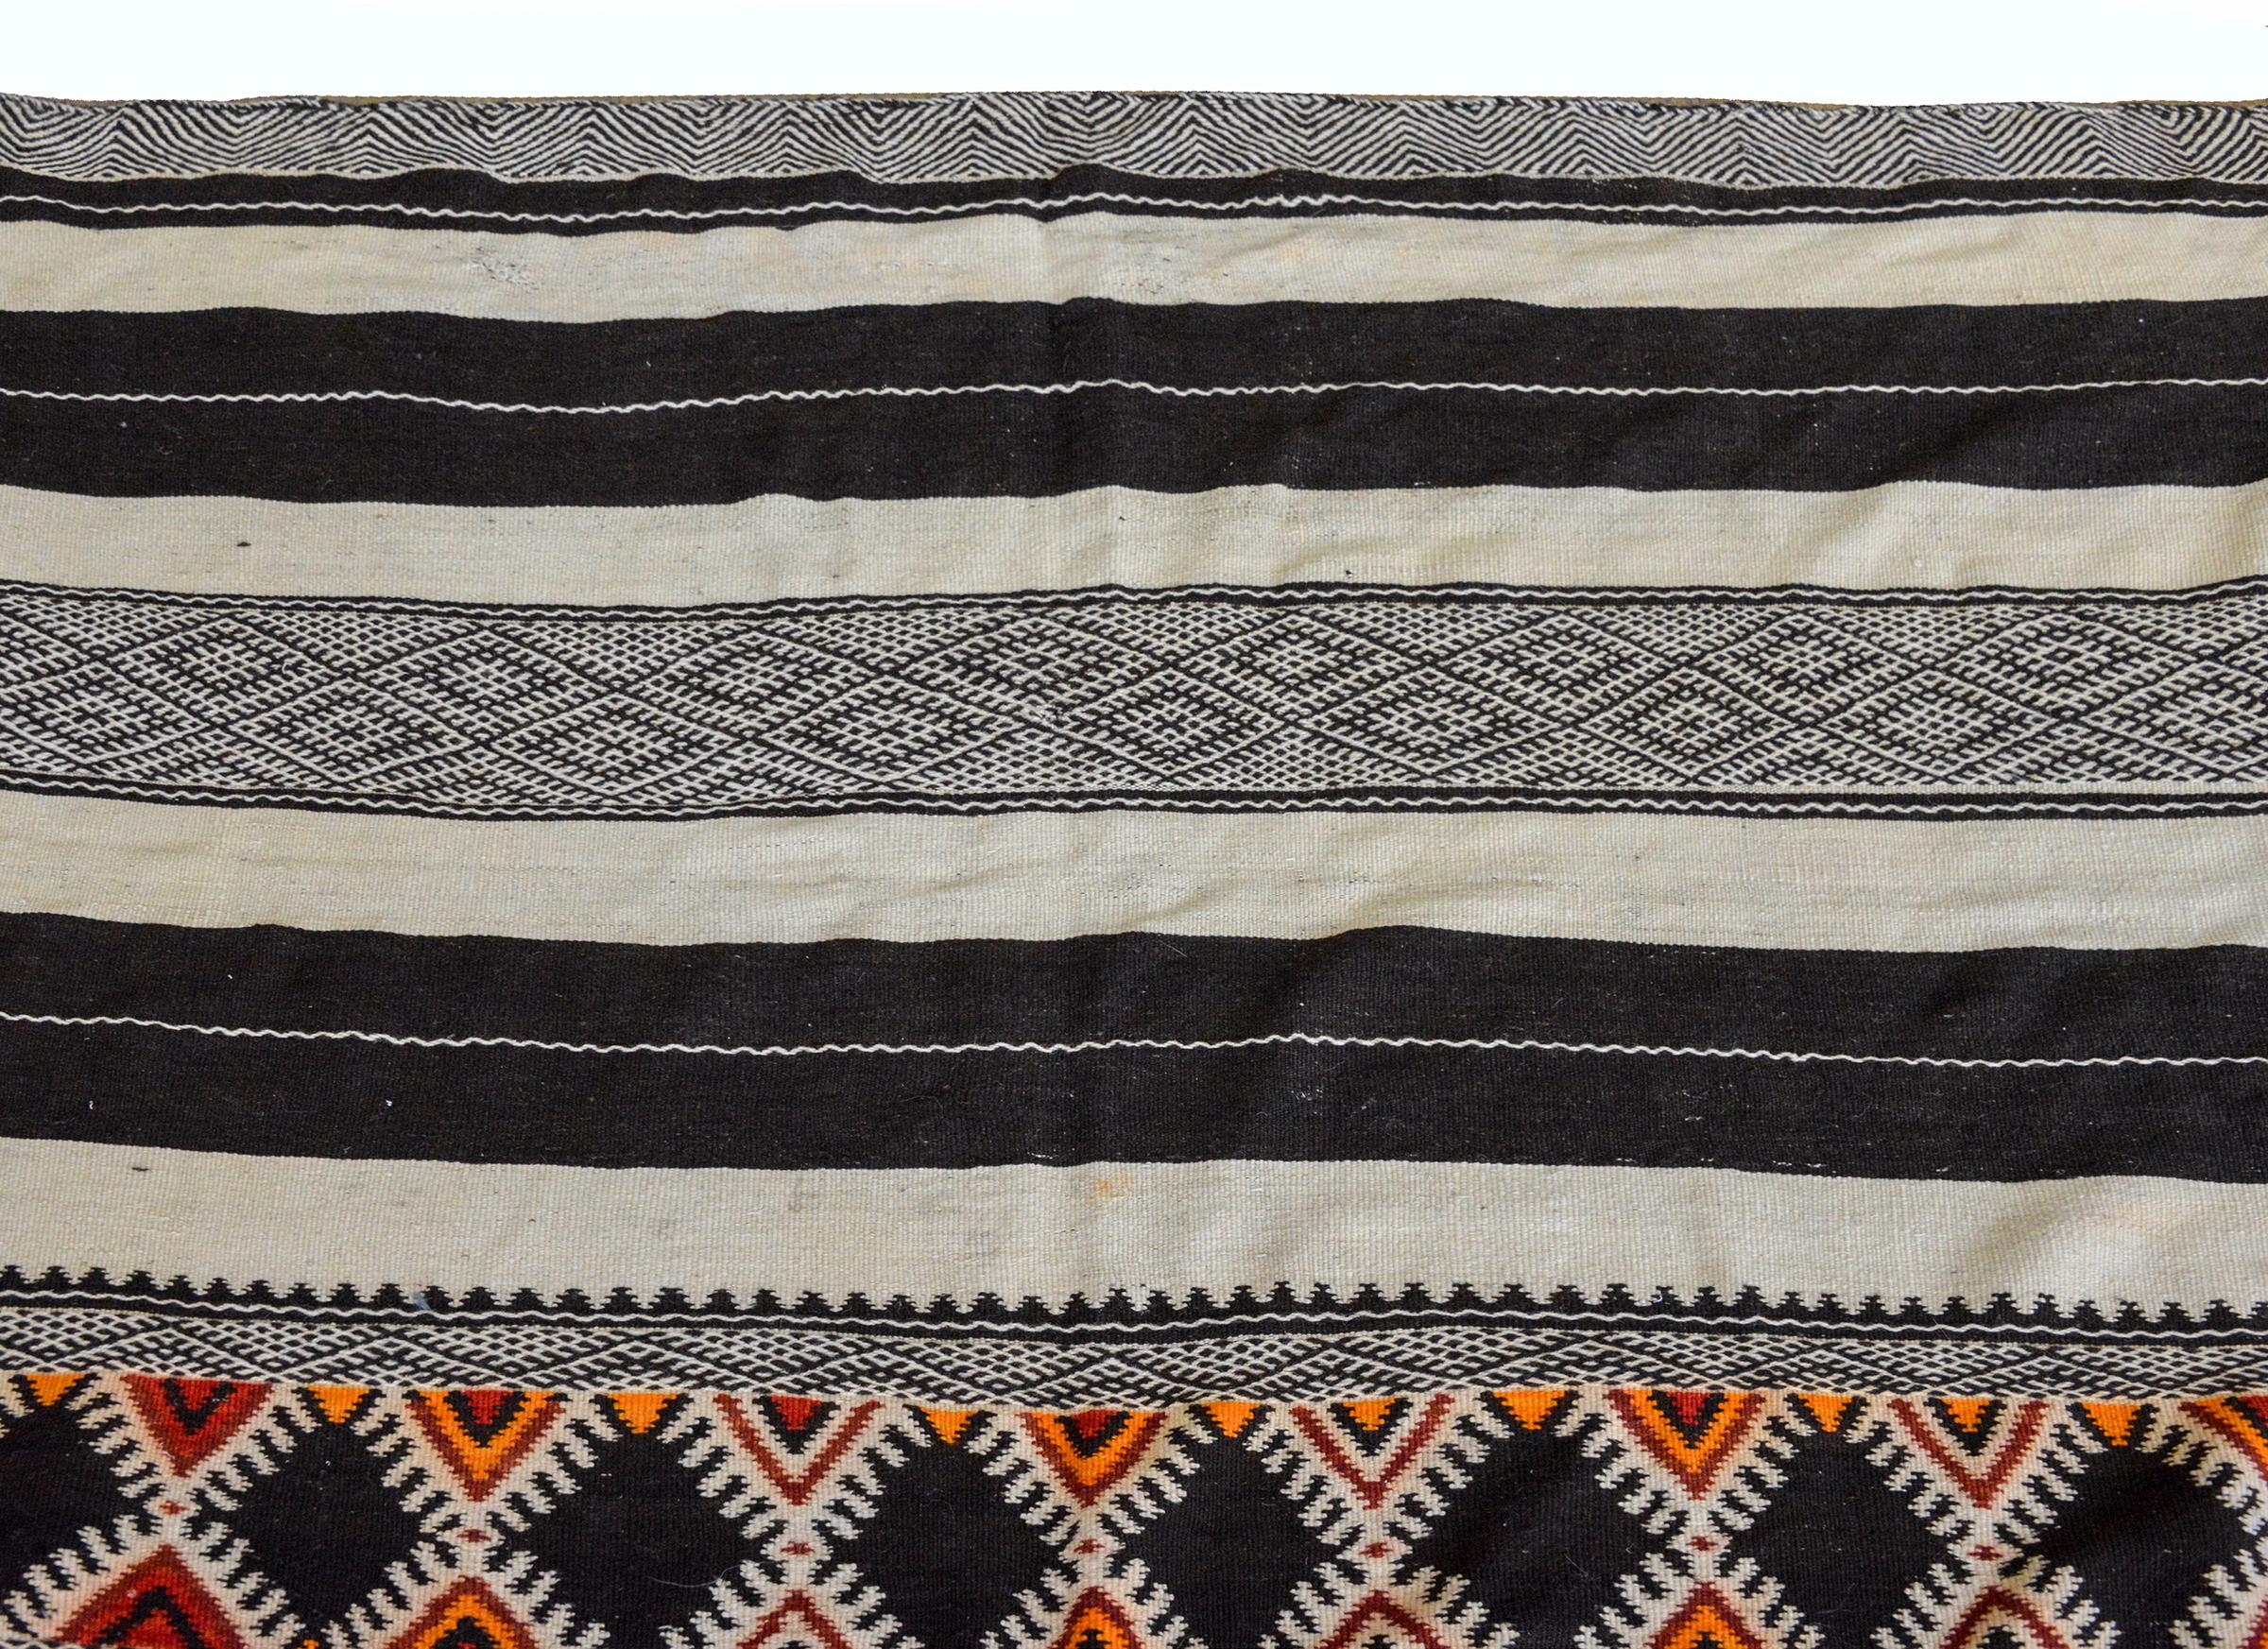 Un magnifique kilim marocain du milieu du 20e siècle avec des rayures multicolores alternées, toutes tissées avec des motifs géométriques.